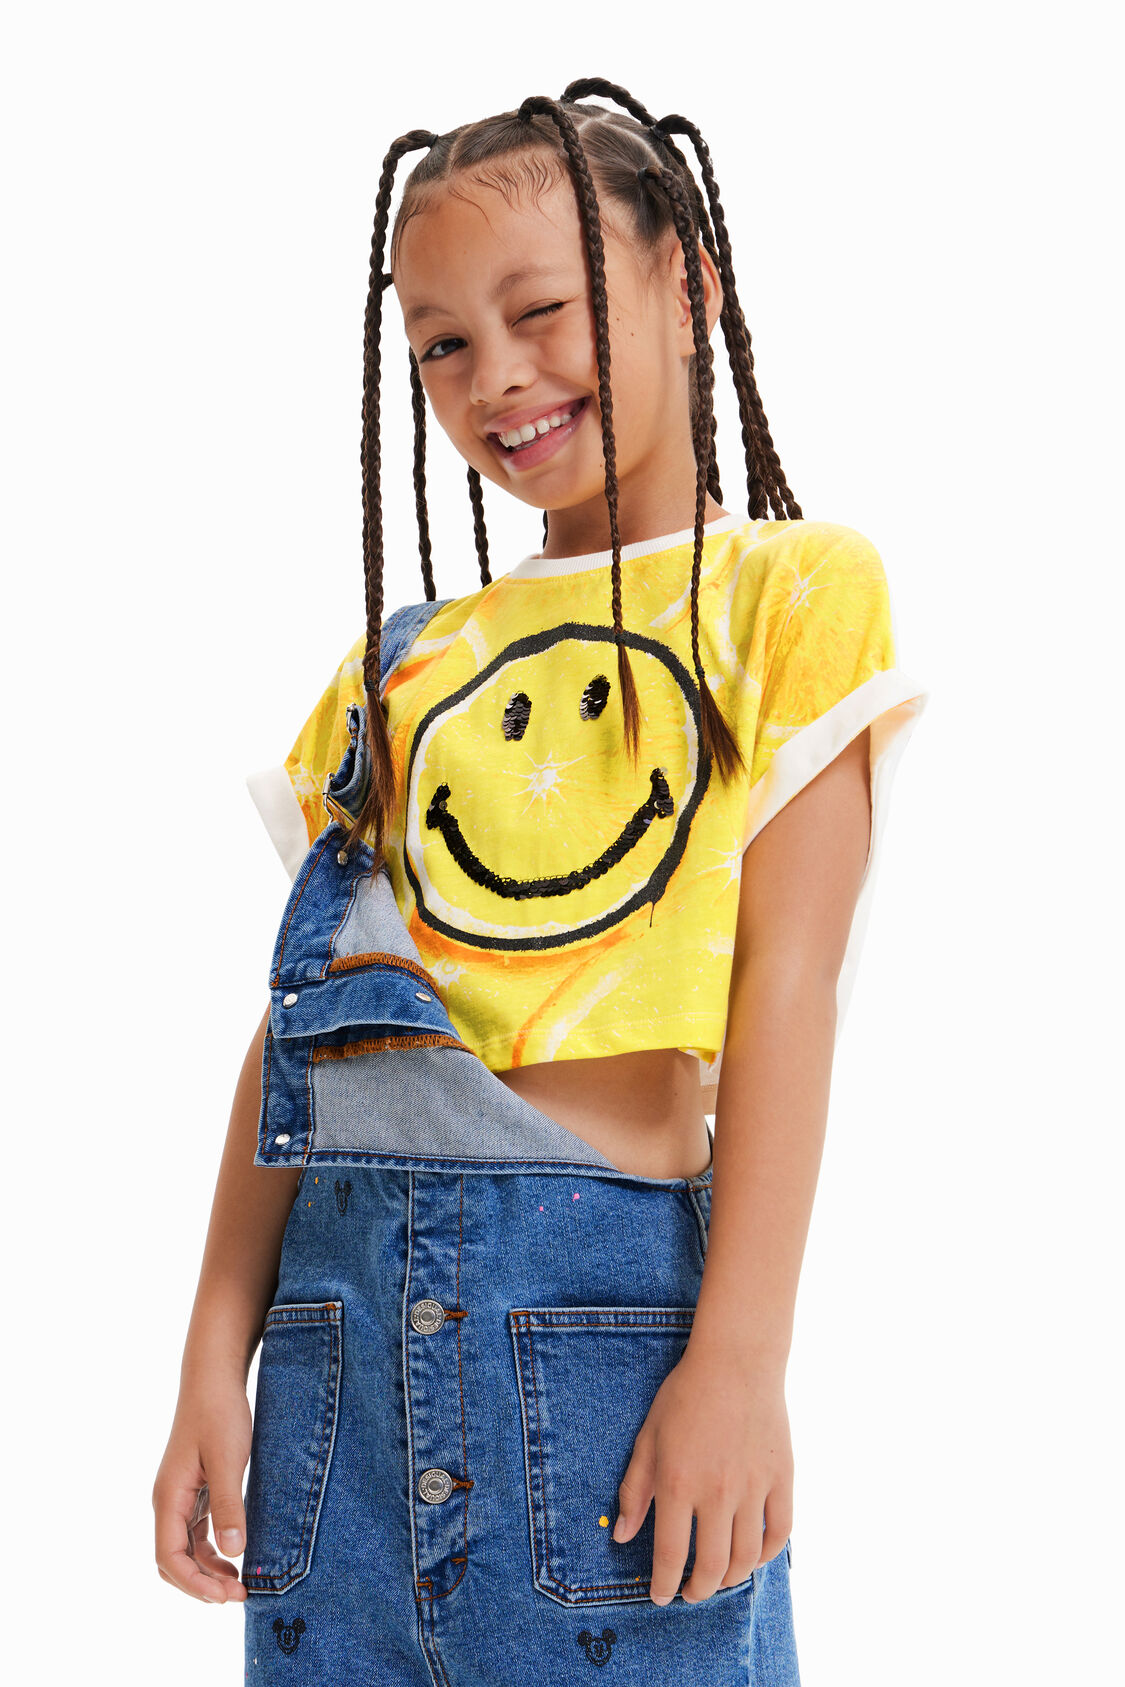 llamada Caballo jueves Camiseta cropped limón Smiley® de niña I Desigual.com